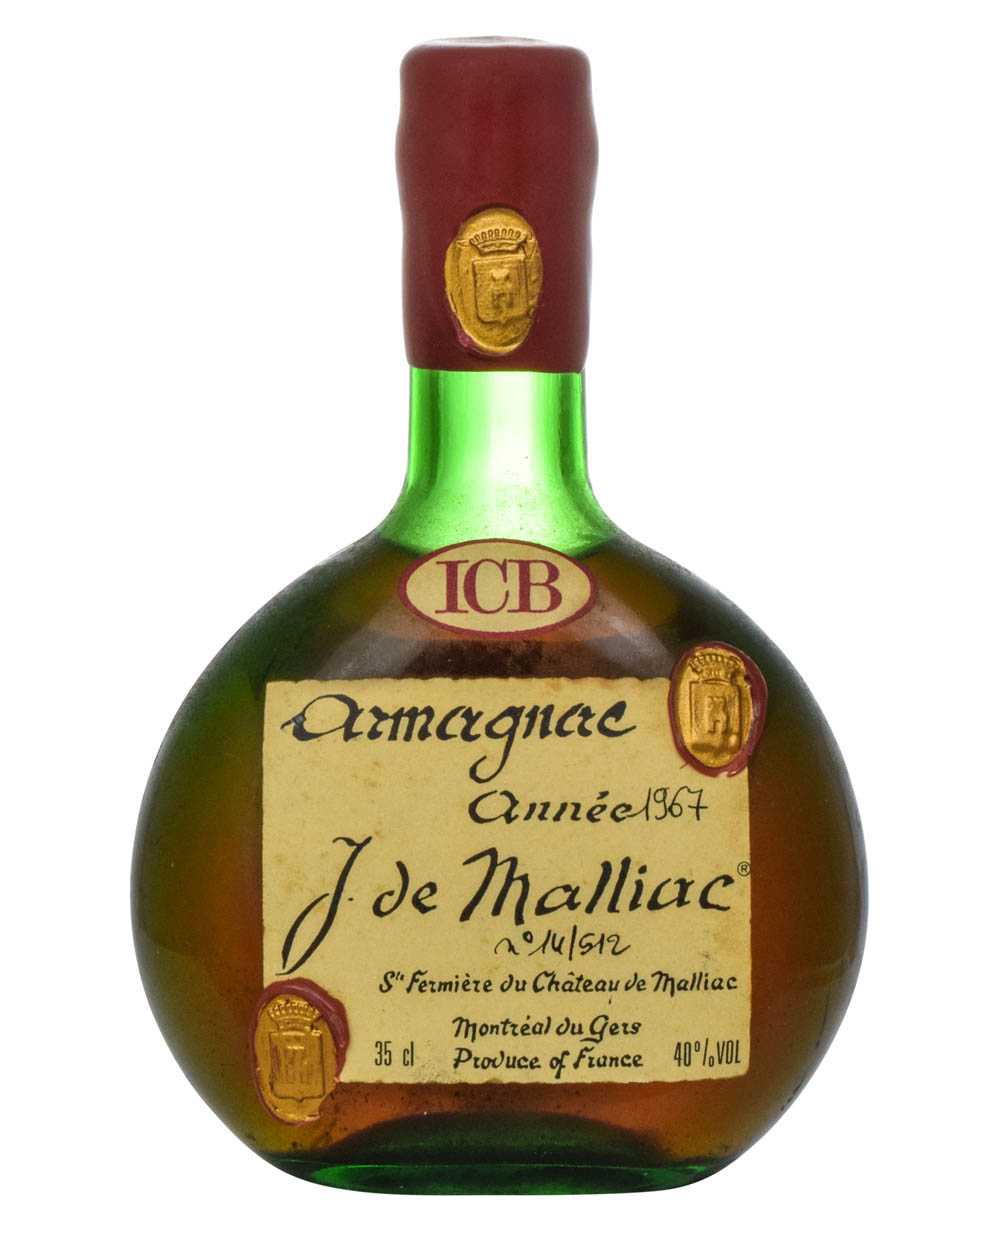 Armagnac Année 1967 J. de Malliac Must Have Malts MHM